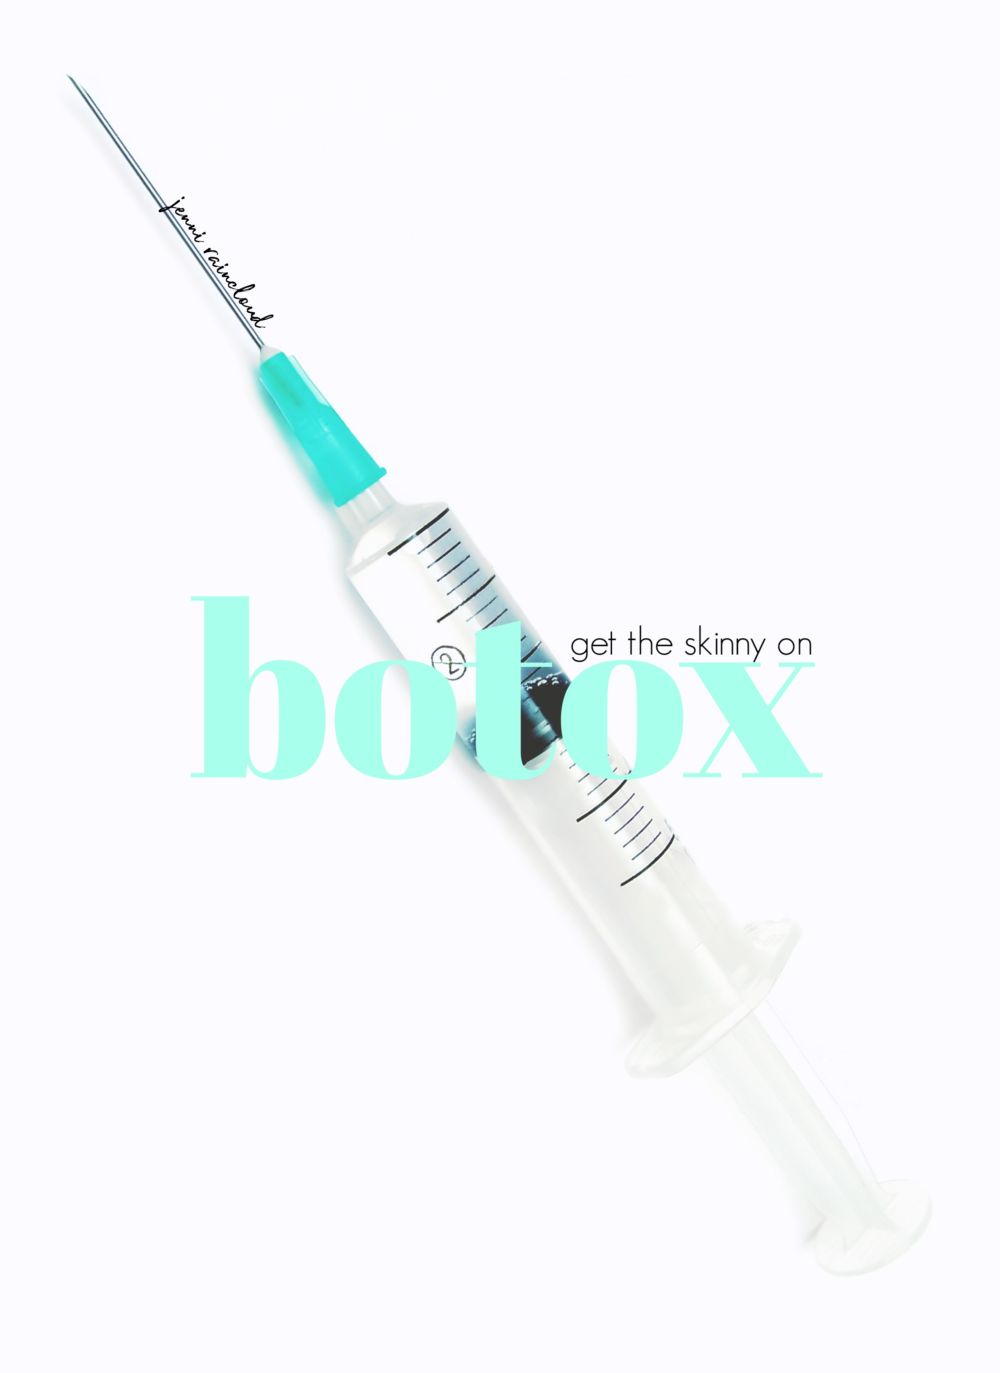 The Dangers of Botox